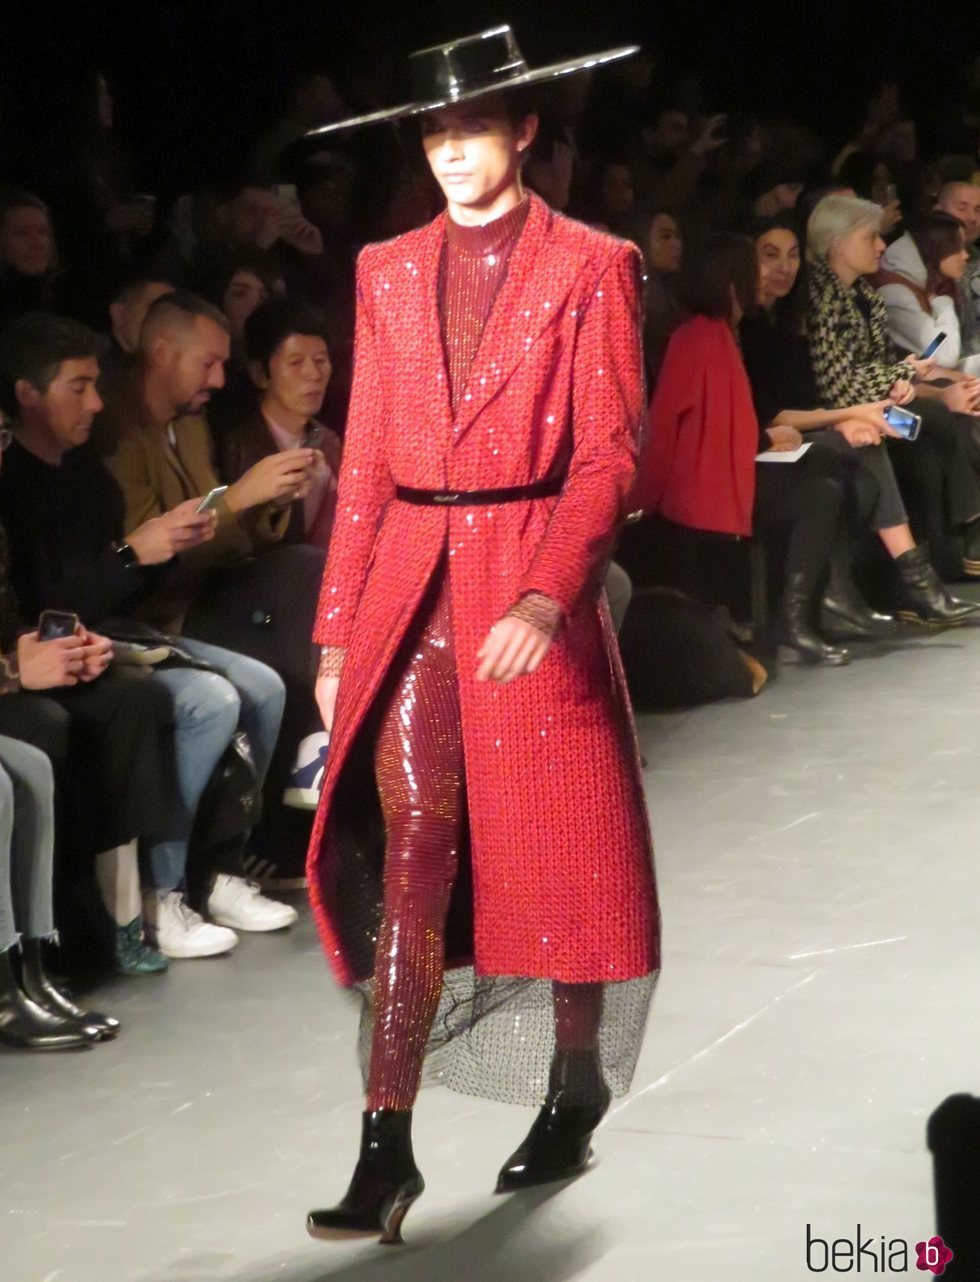 Modelo con un diseño rojo de Palomo Spain en la New York Fashion Week 2019